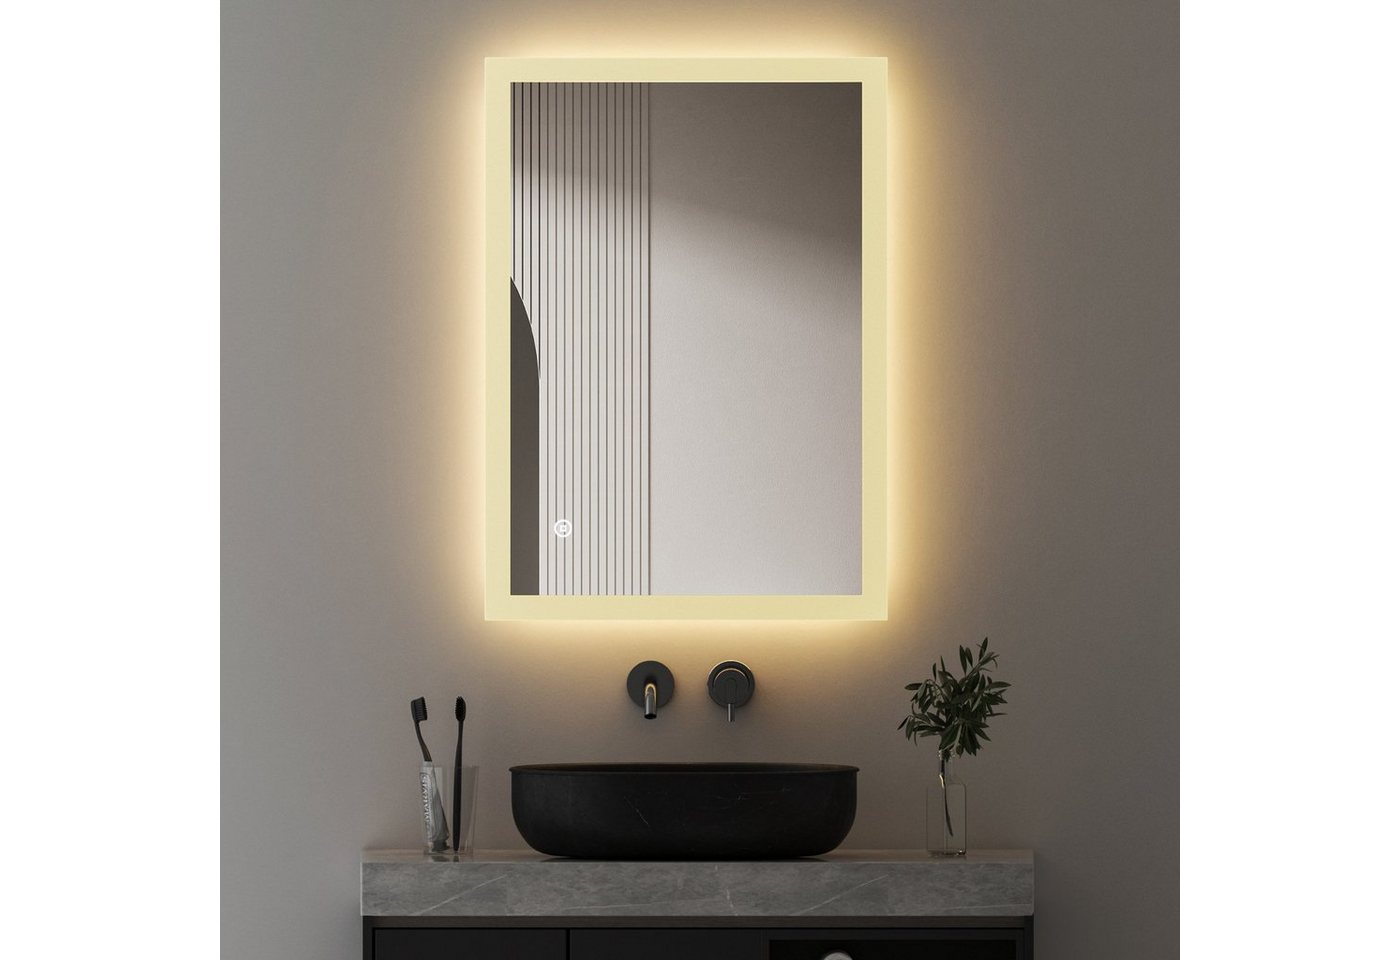 WDWRITTI Spiegel Bad mit Warmweiß beleuchtung Badspiegel Led Touch Uhr Wandschalter (Badezimmerspiegel Rund Rechteckig, 3 Lichtfarben, Helligkeit einstellbar), Speicherfunktion, IP44 von WDWRITTI